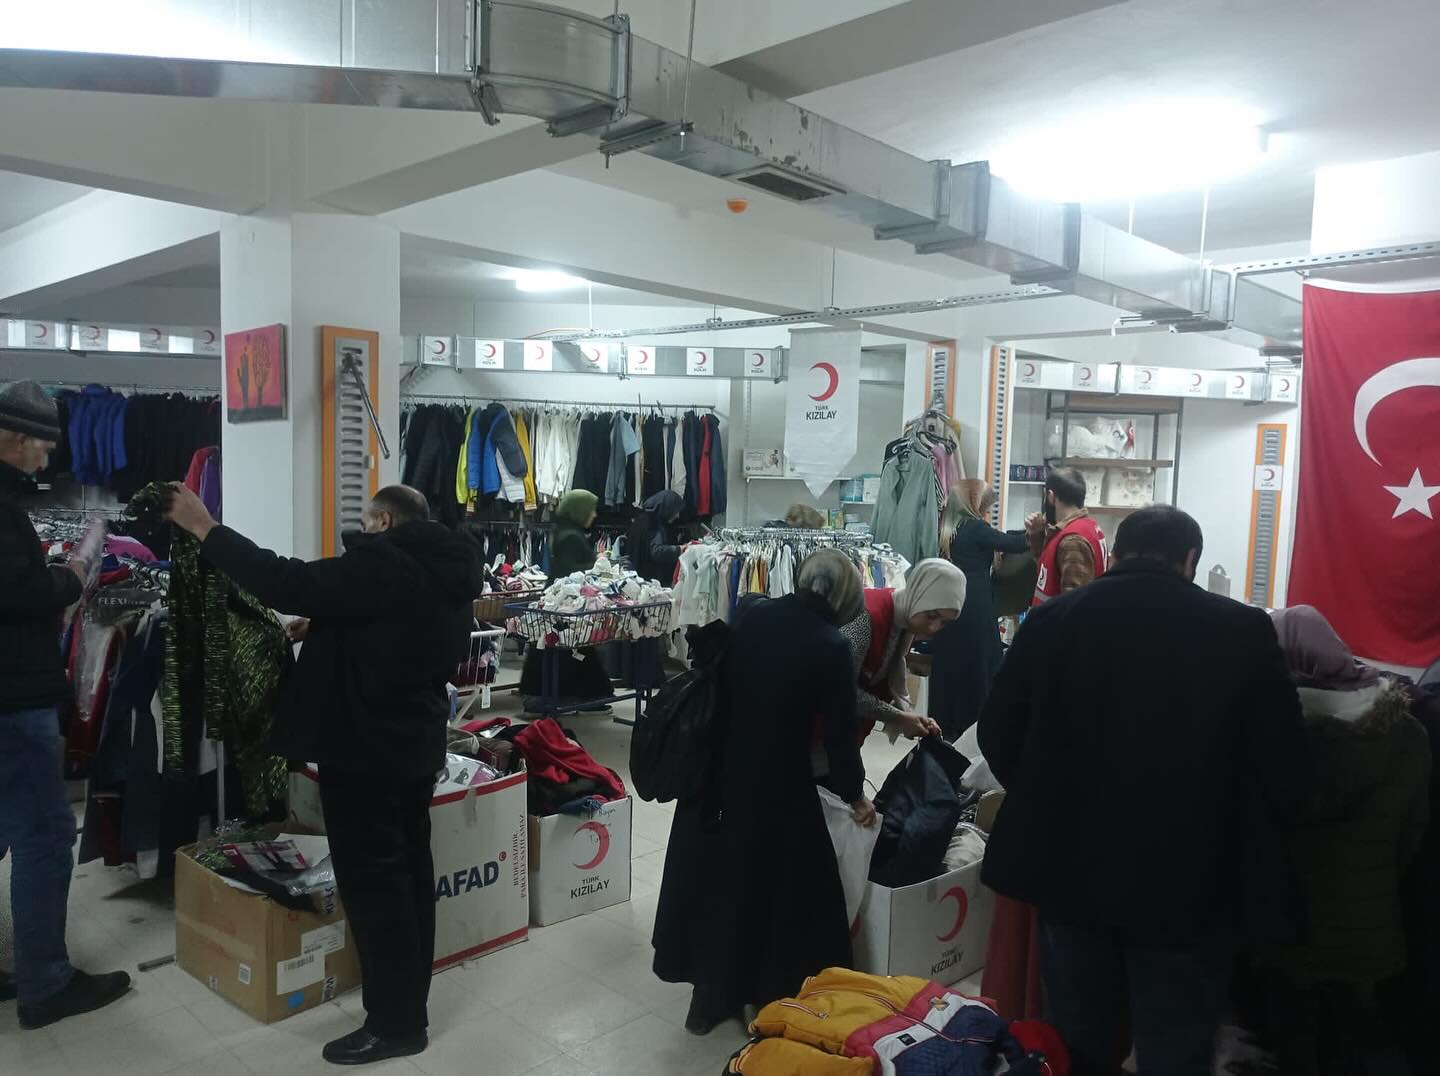 📍Türk Kızılay Elazığ Butik Mağazası  Türk Kızılay Elazığ şubesi olarak ihtiyaç sahiplerimiz için butik mağazamızda kıyafet dağıtımlarımıza devam ediyoruz🌙